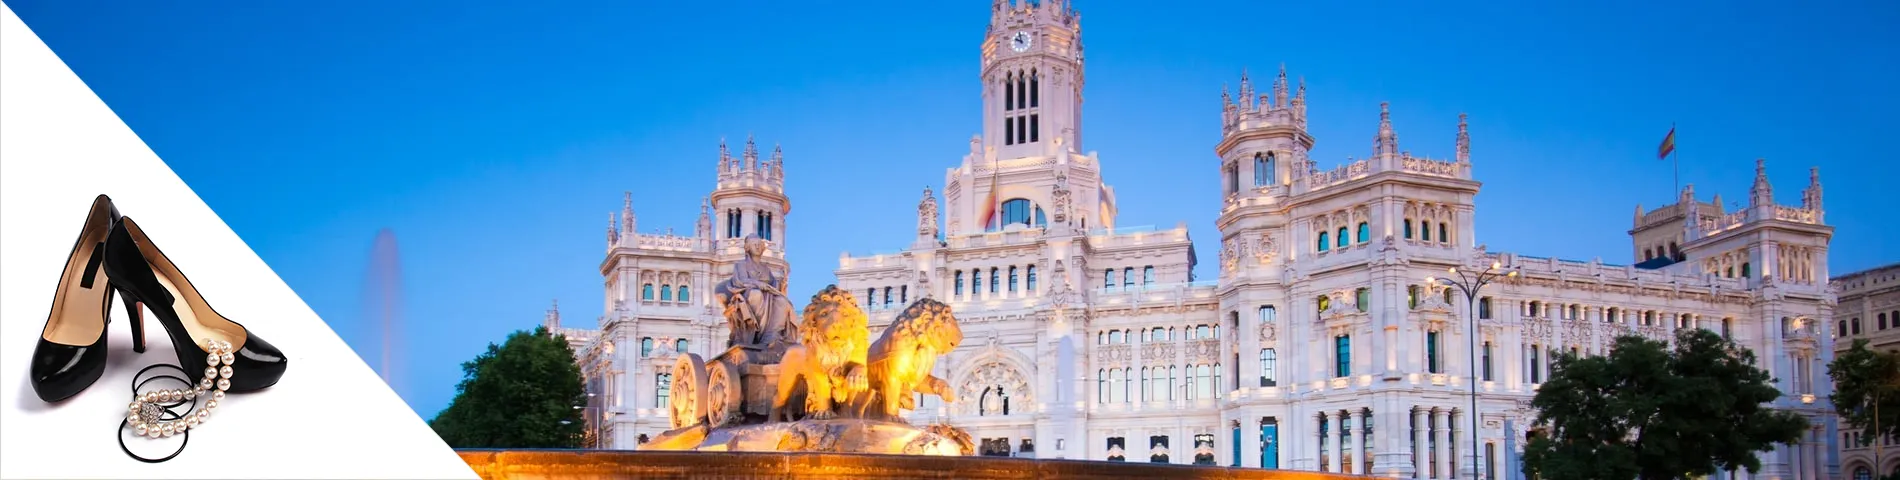 Мадрид - Испанский и Мода